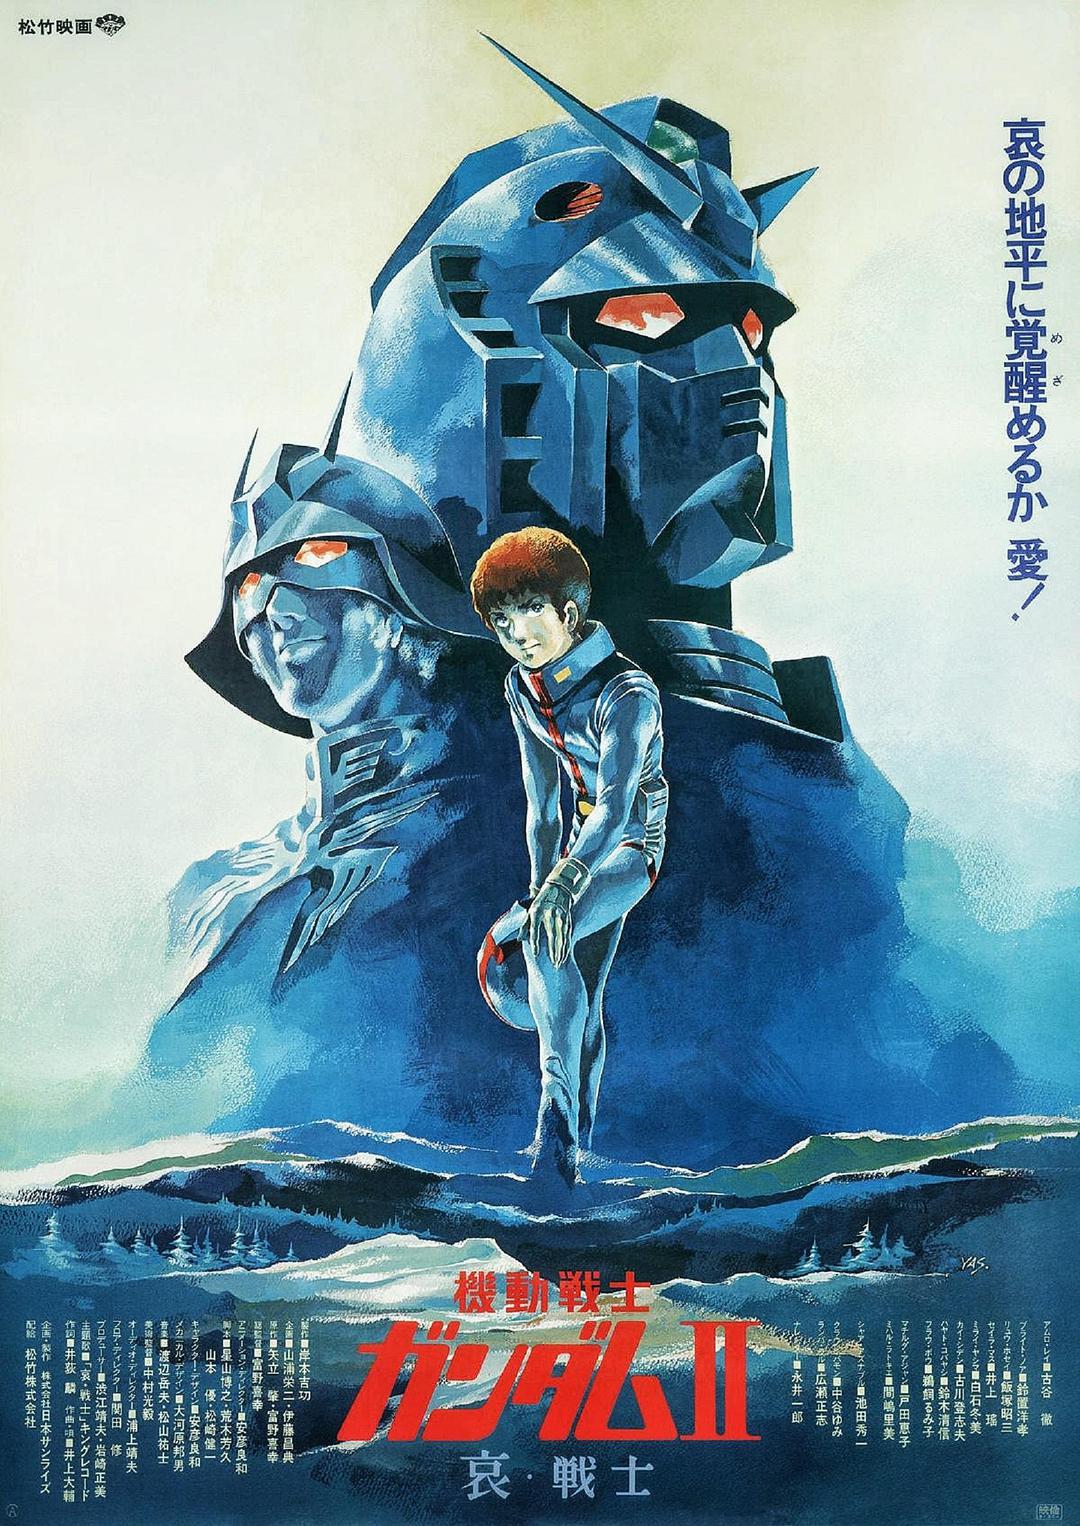 [机动战士高达 剧场版Ⅱ 哀·战士][DiY简繁字幕] Mobile Suit Gundam Movie II 1981 1080p Blu-ray AVC Atmos TrueHD 7.1-DiY@HDHome    [42.68 GB]-1.jpg